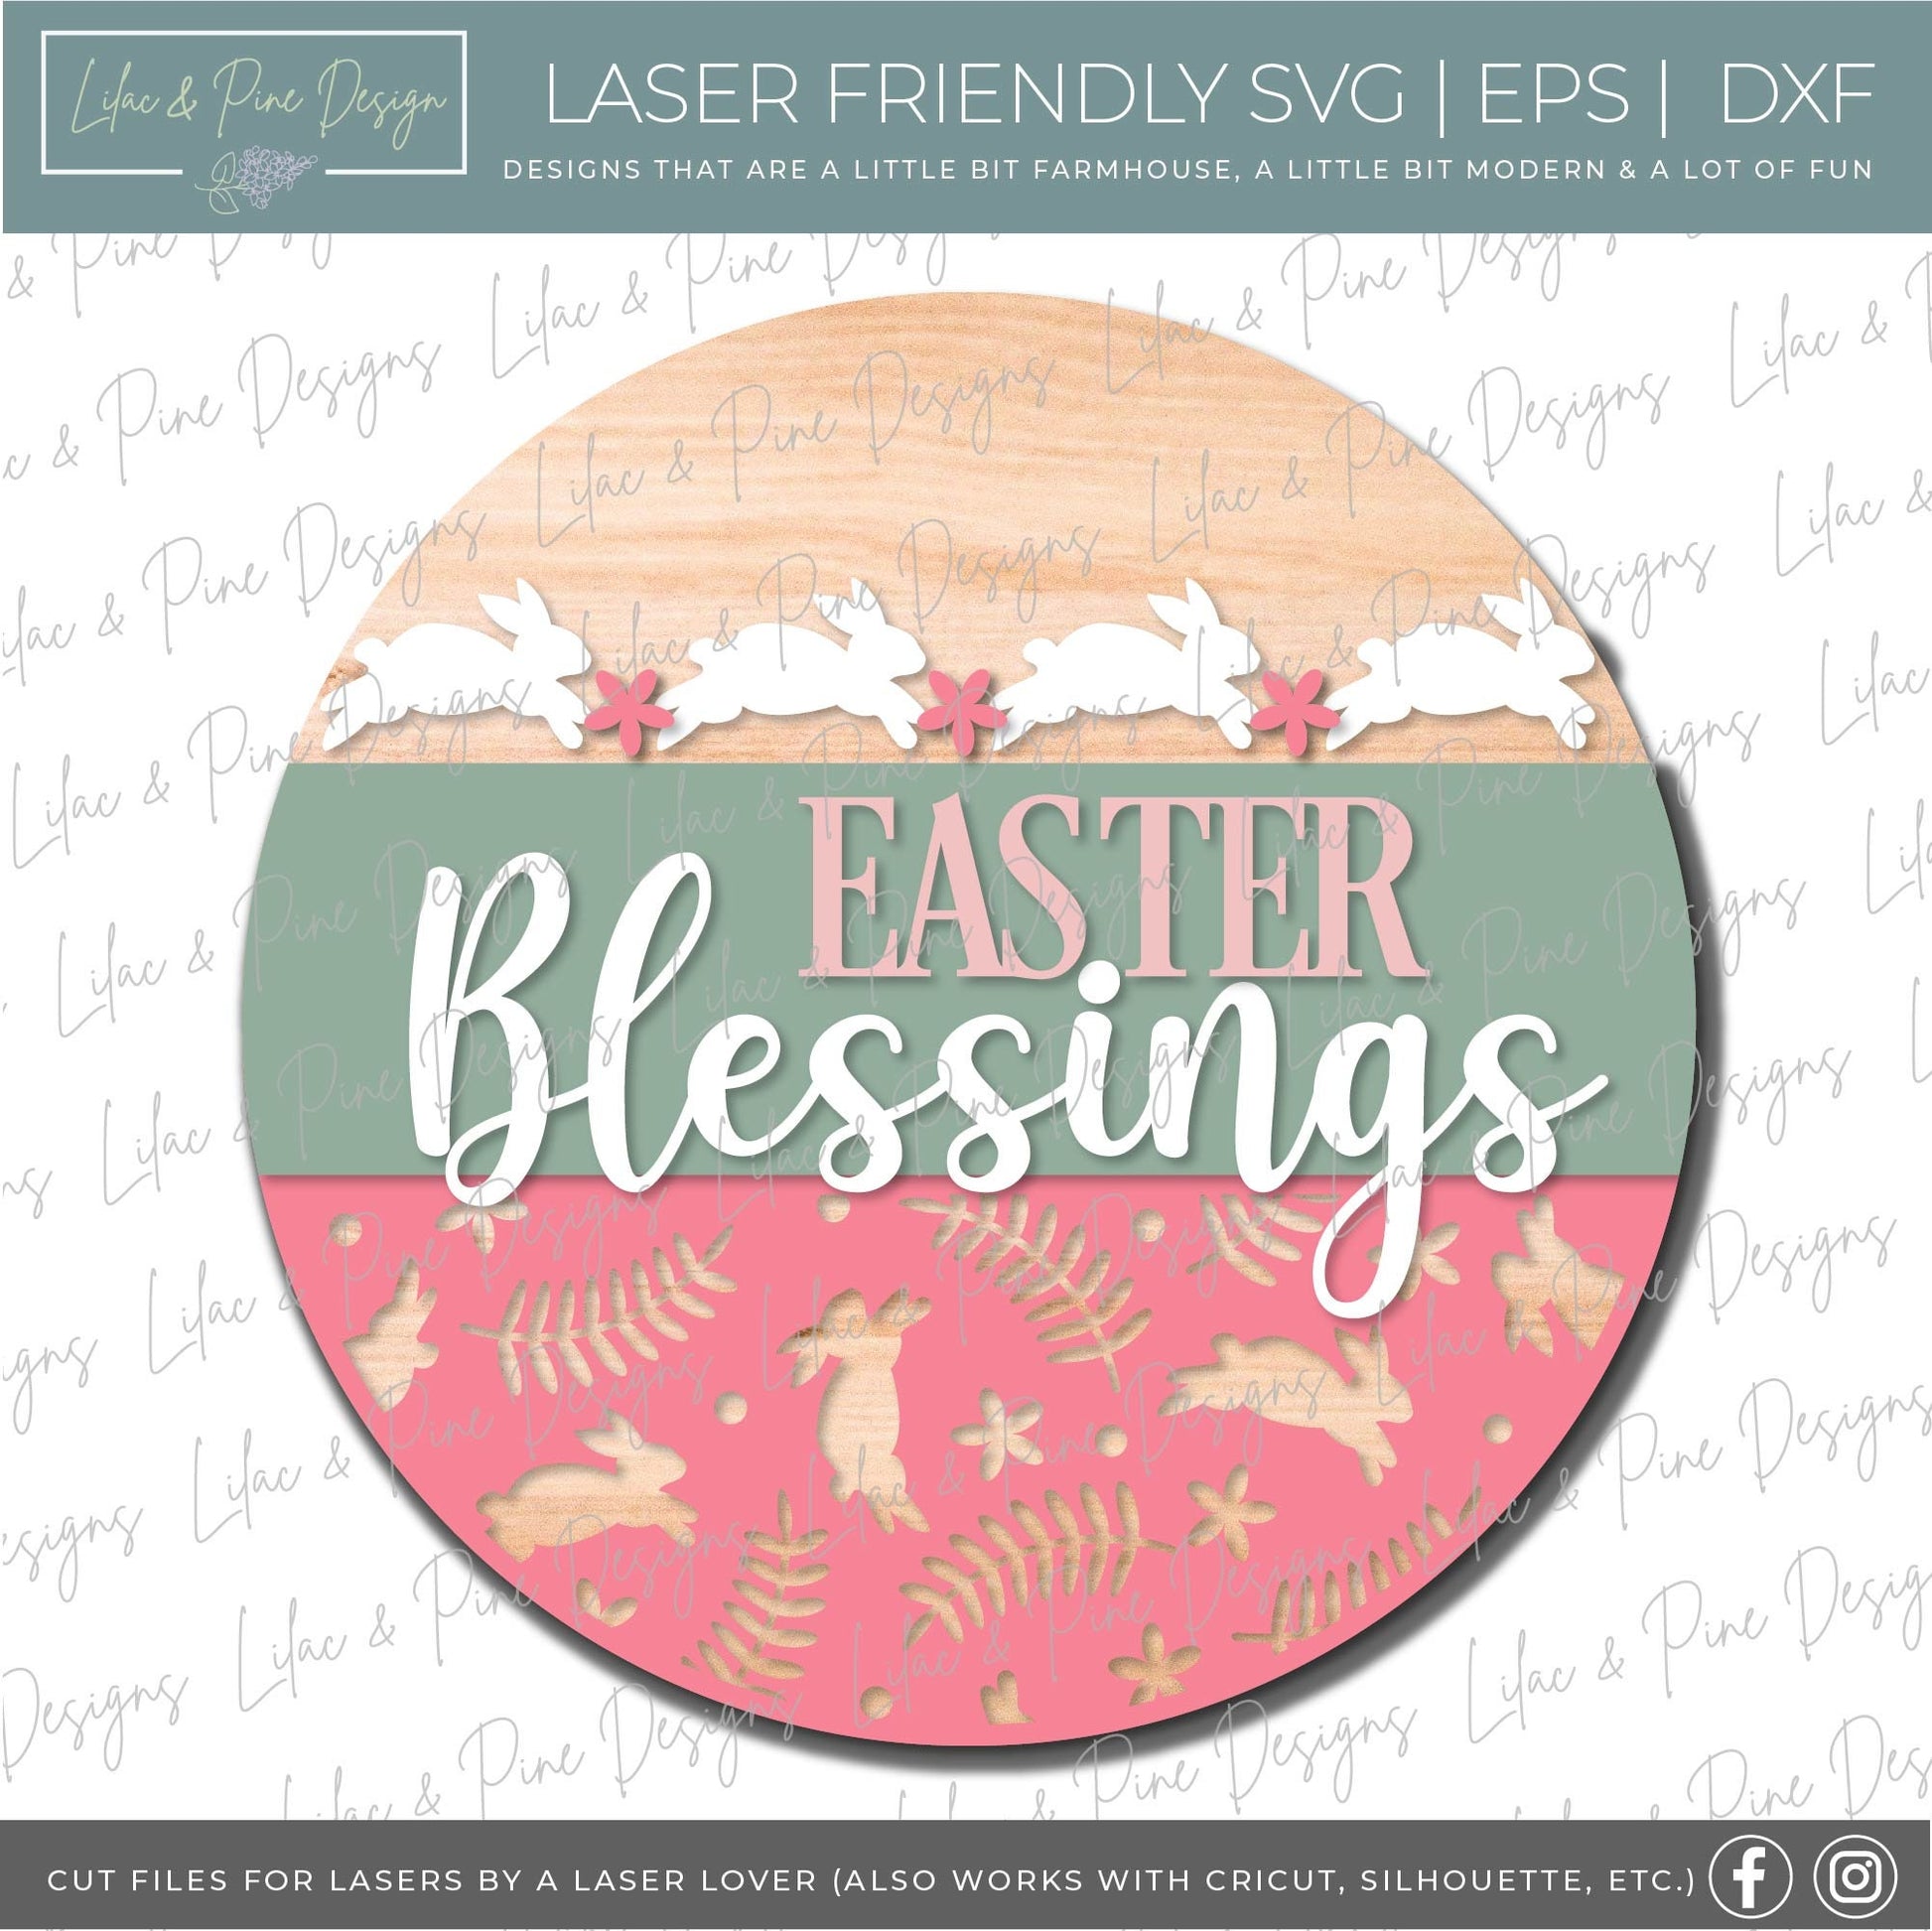 Easter Welcome door hanger, Easter blessings SVG, Easter bunny sign, spring floral svg, Farmhouse Easter decor, Glowforge svg, laser file